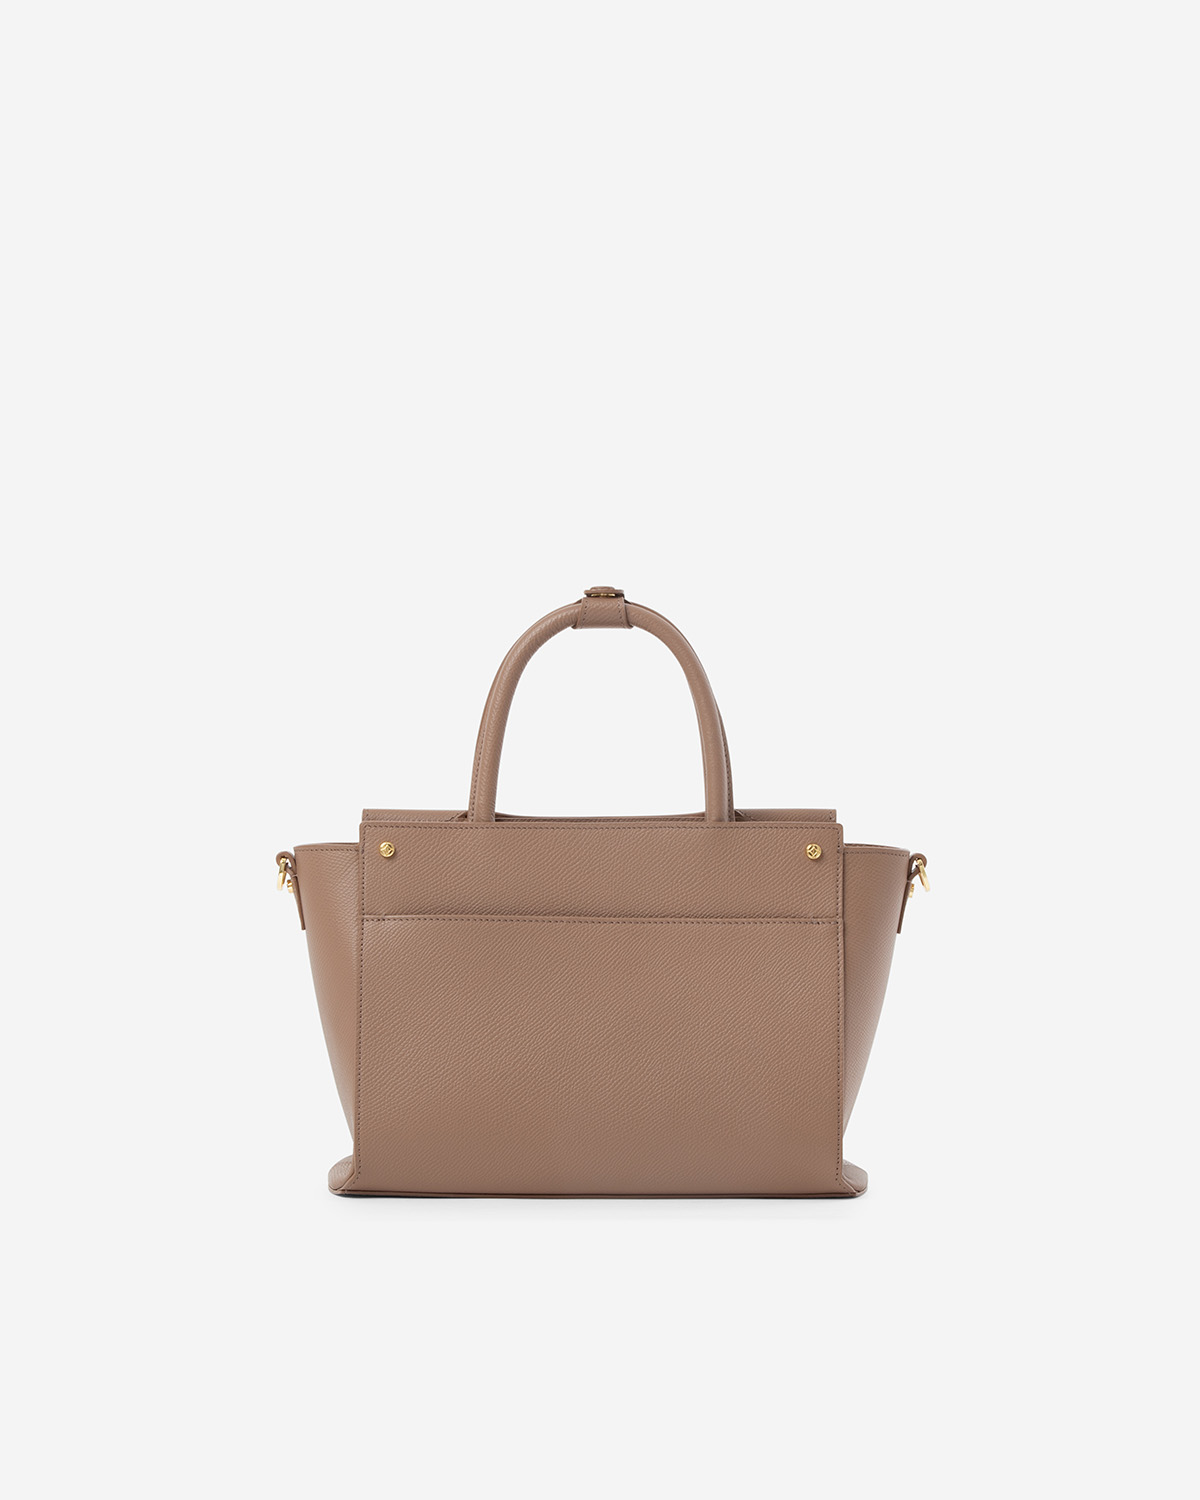 กระเป๋าถือหนังแท้ VERA Heidi Leather Handbag, ไซส์ 28 สี Wood Rose